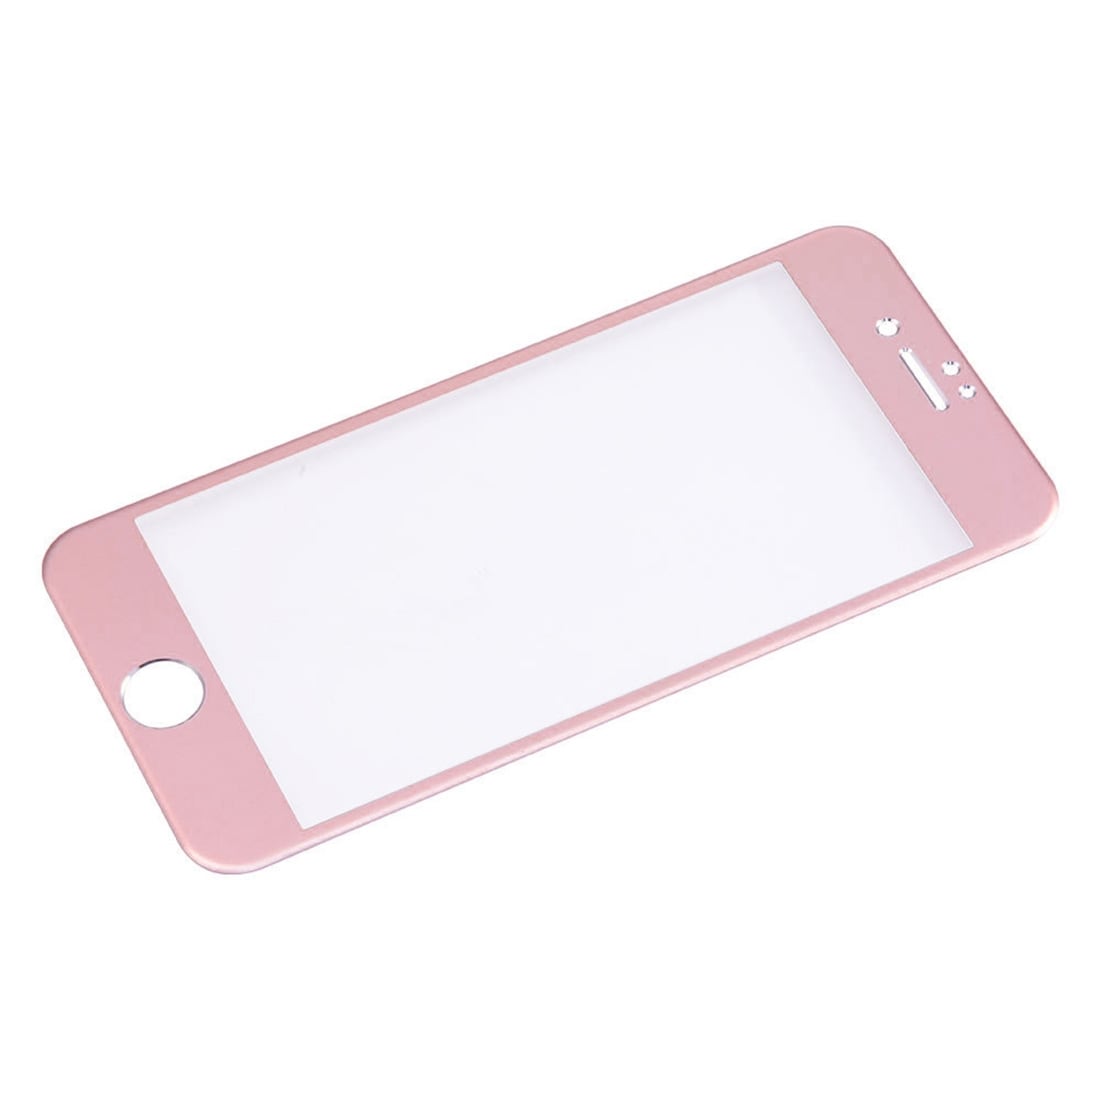 Bøyd herdet fullskjermbeskyttelse av glass til iPhone 8 / 7 - Rosegull